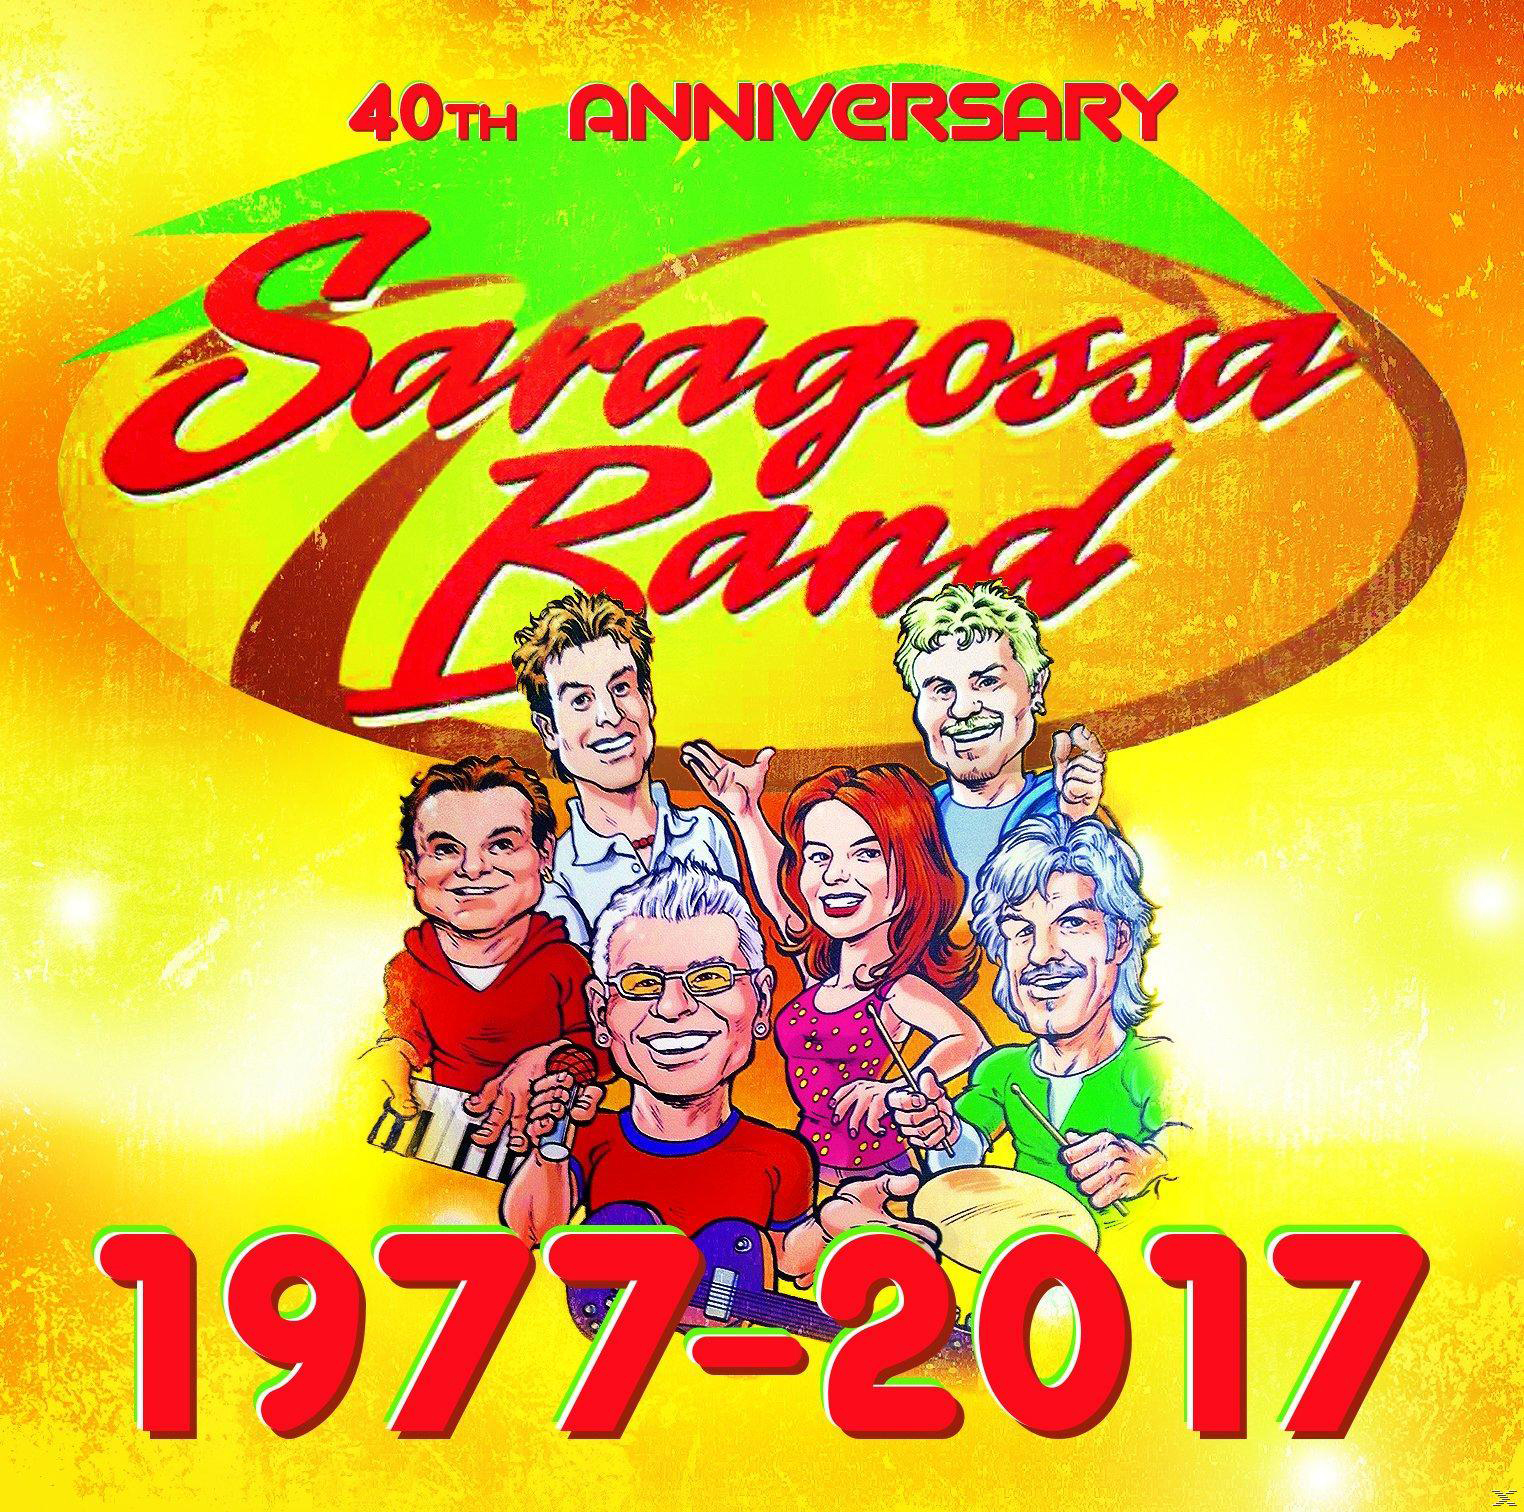 - Band (CD) Anniversary (40th - Box) 1977-2017 Saragossa